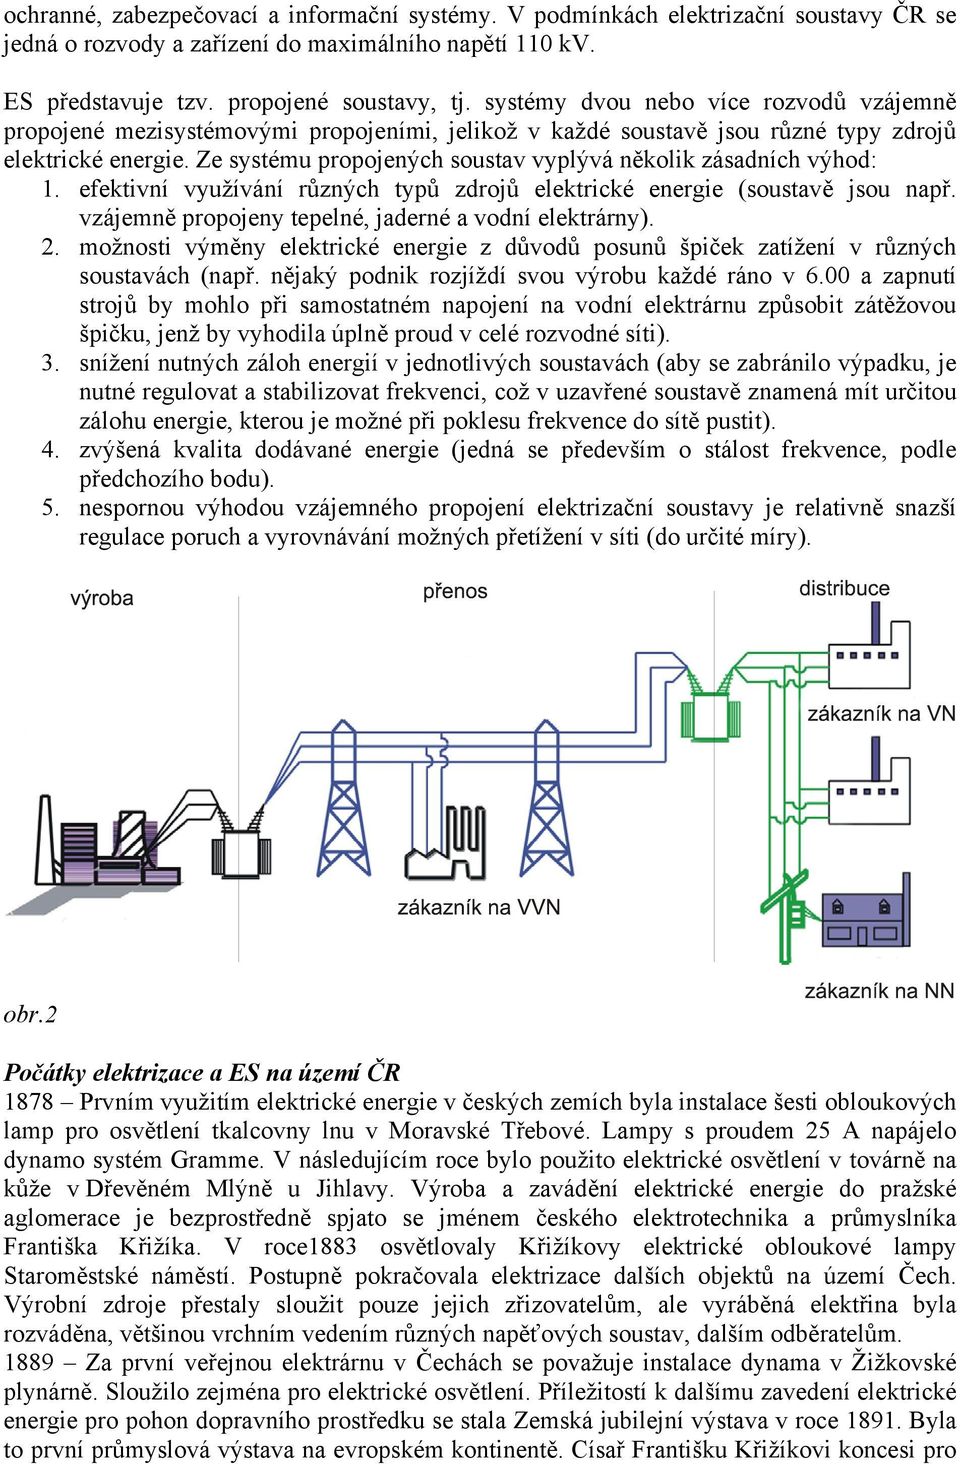 Ze systému propojených soustav vyplývá několik zásadních výhod: 1. efektivní využívání různých typů zdrojů elektrické energie (soustavě jsou např.